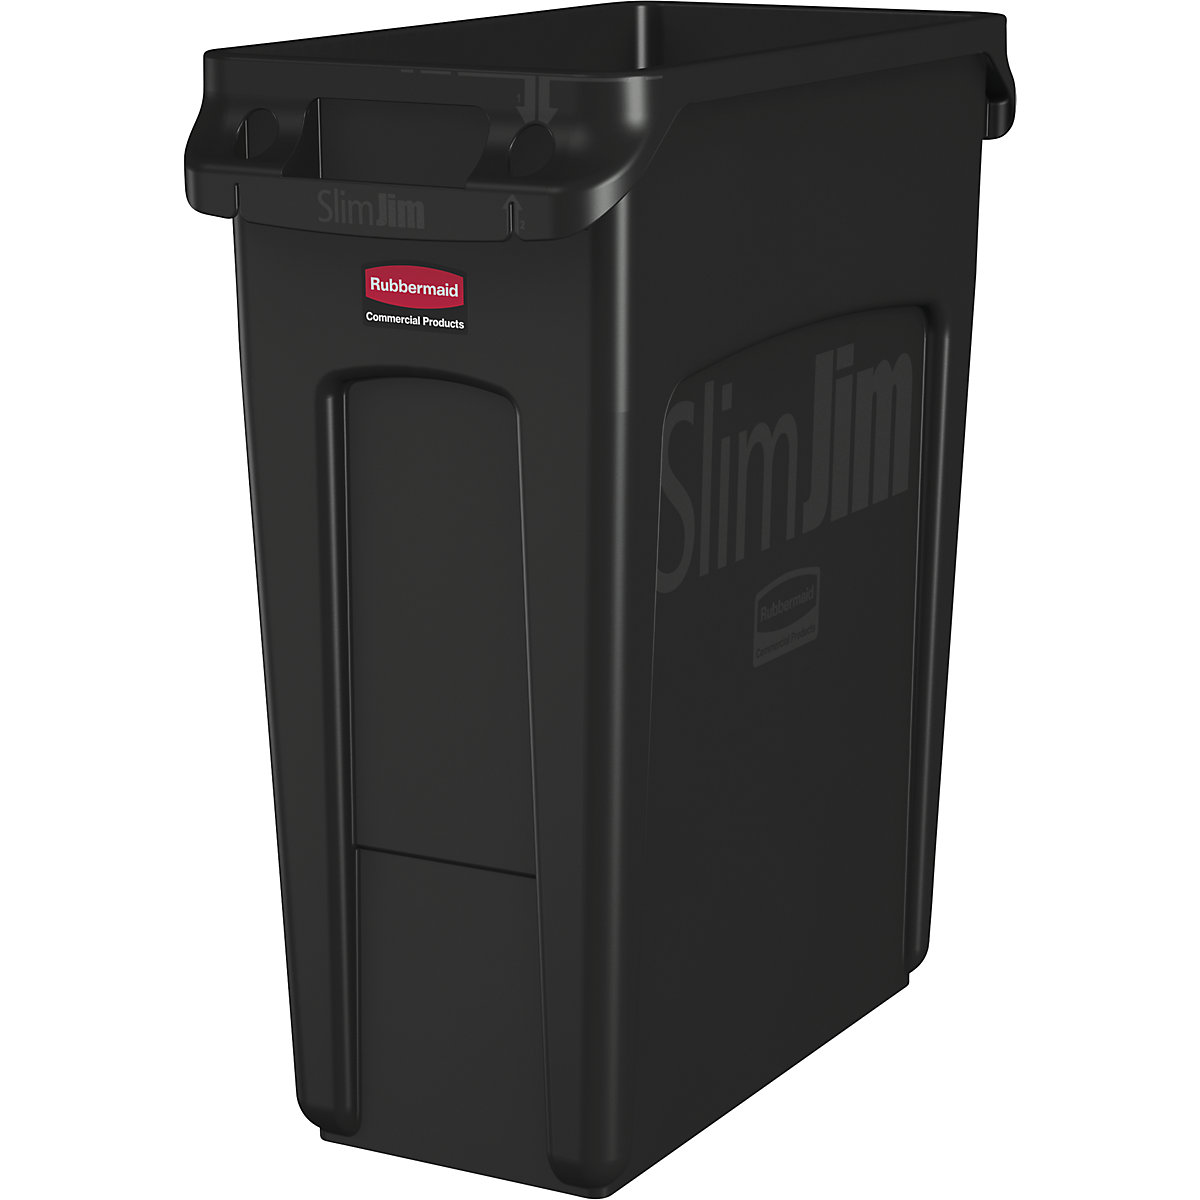 Recipient de colectare a deșeurilor reciclabile/coș de gunoi SLIM JIM® – Rubbermaid, volum de 60 l, cu canale de aerisire, negru, minimum 10 buc.-10